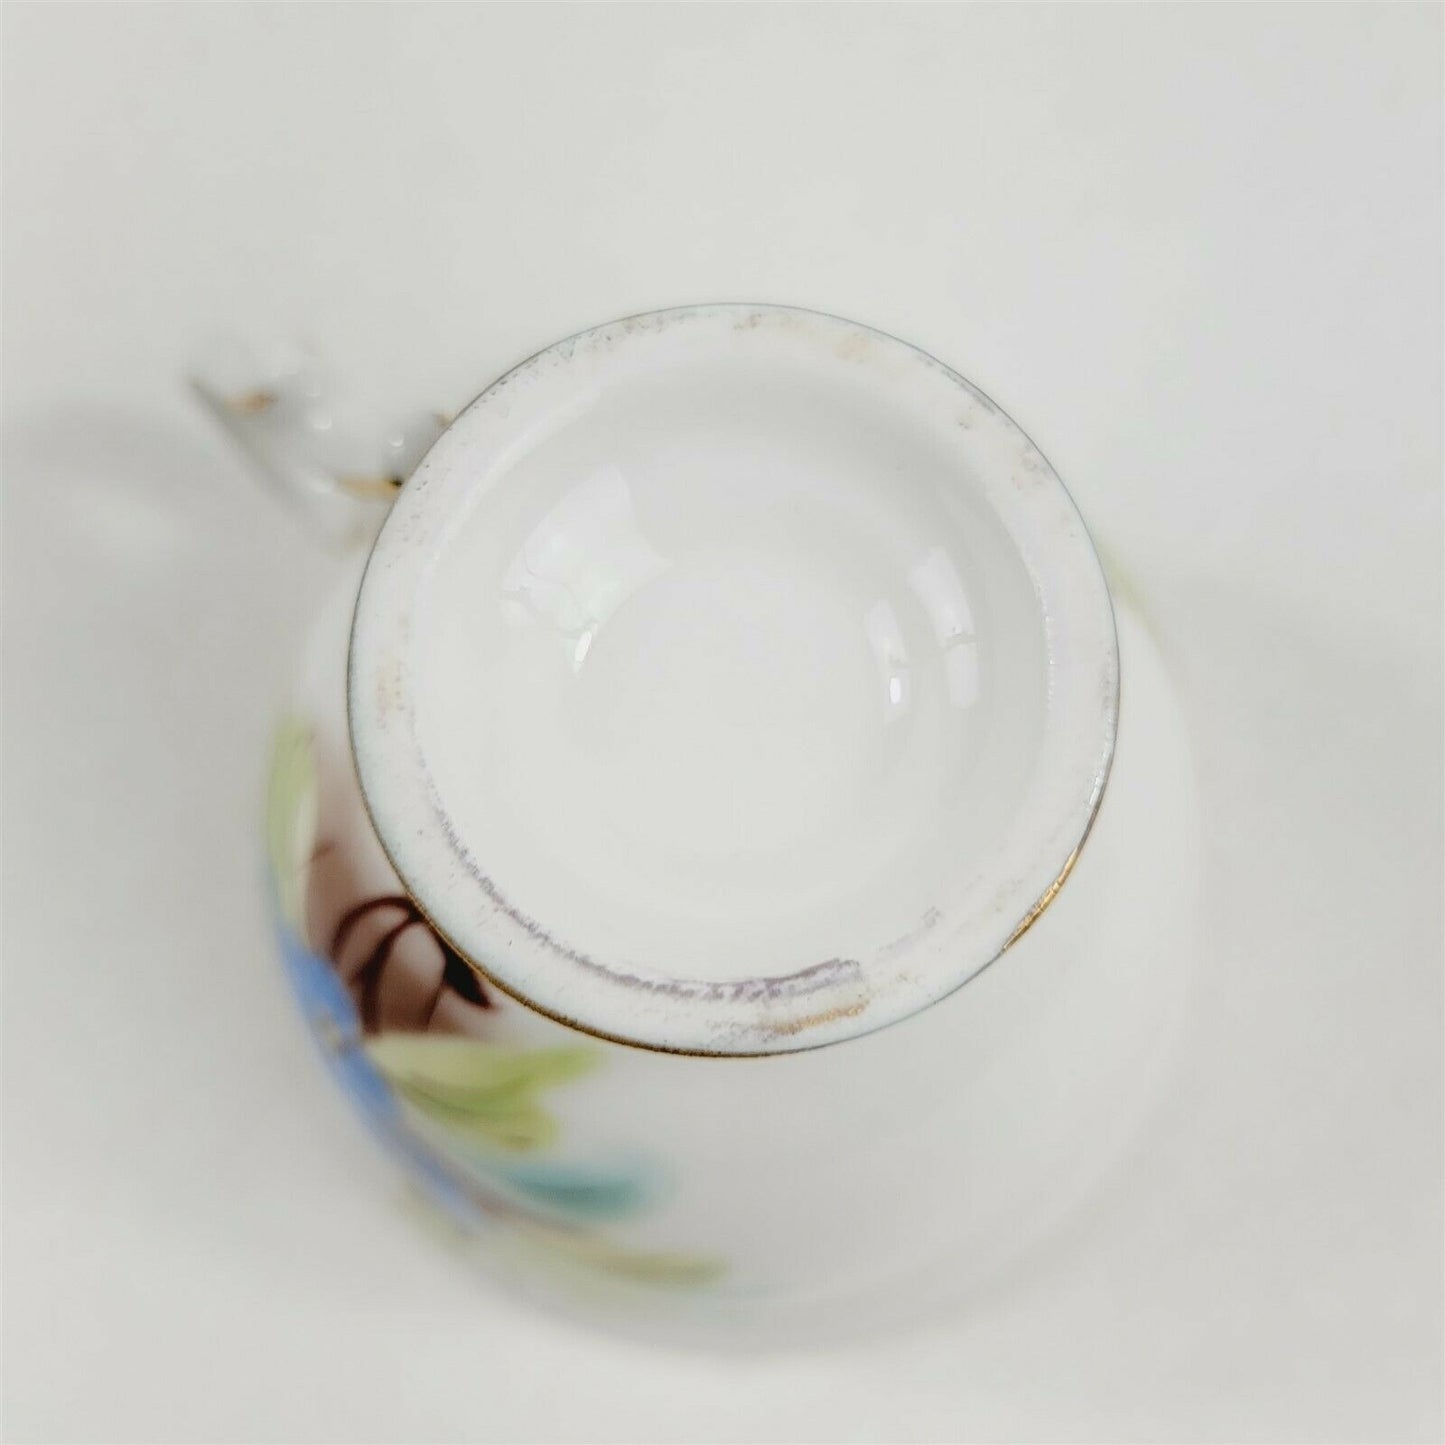 Hong Sheng Blue Floral Decorative Tea Cup & Saucer